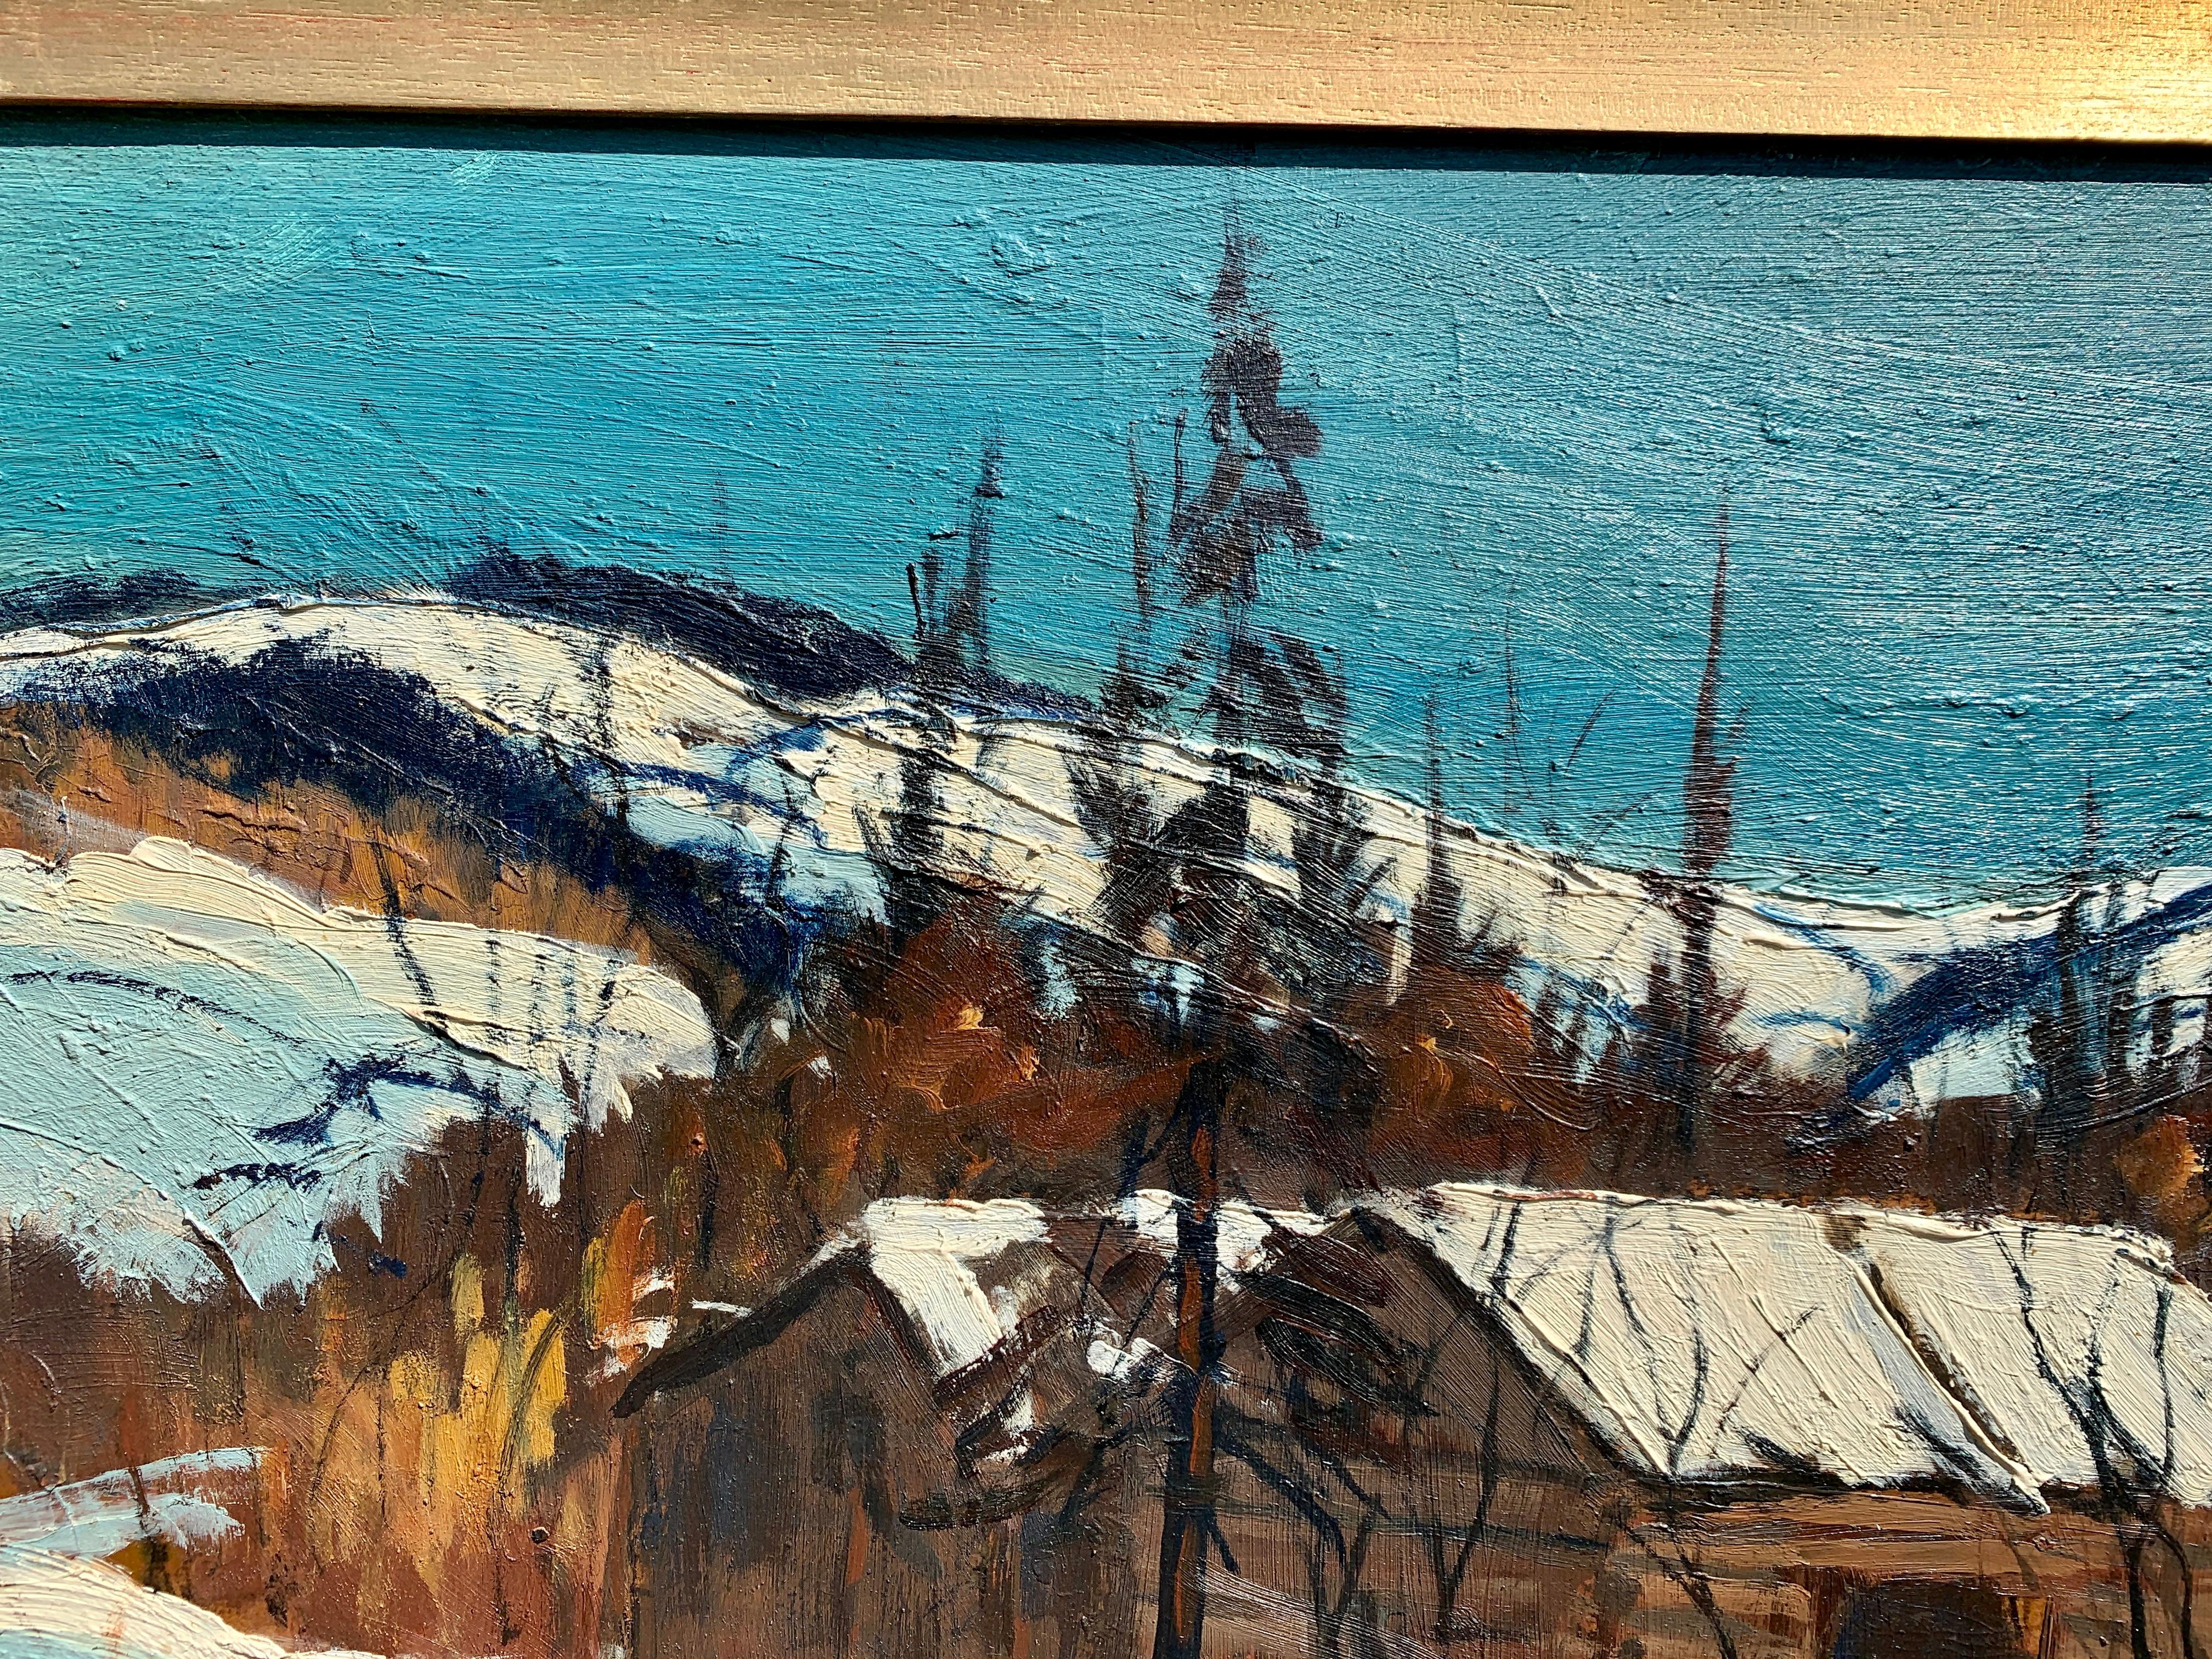 Hervorragendes Öl an Bord einer schneebedeckten kanadischen Landschaft der Haliburton Highlands bei Ontario.

Andrew B. Phin ist ein Maler, der als kanadischer Landschaftsmaler des 20. Jahrhunderts geführt wird.

Dieses Werk hat einen großartigen